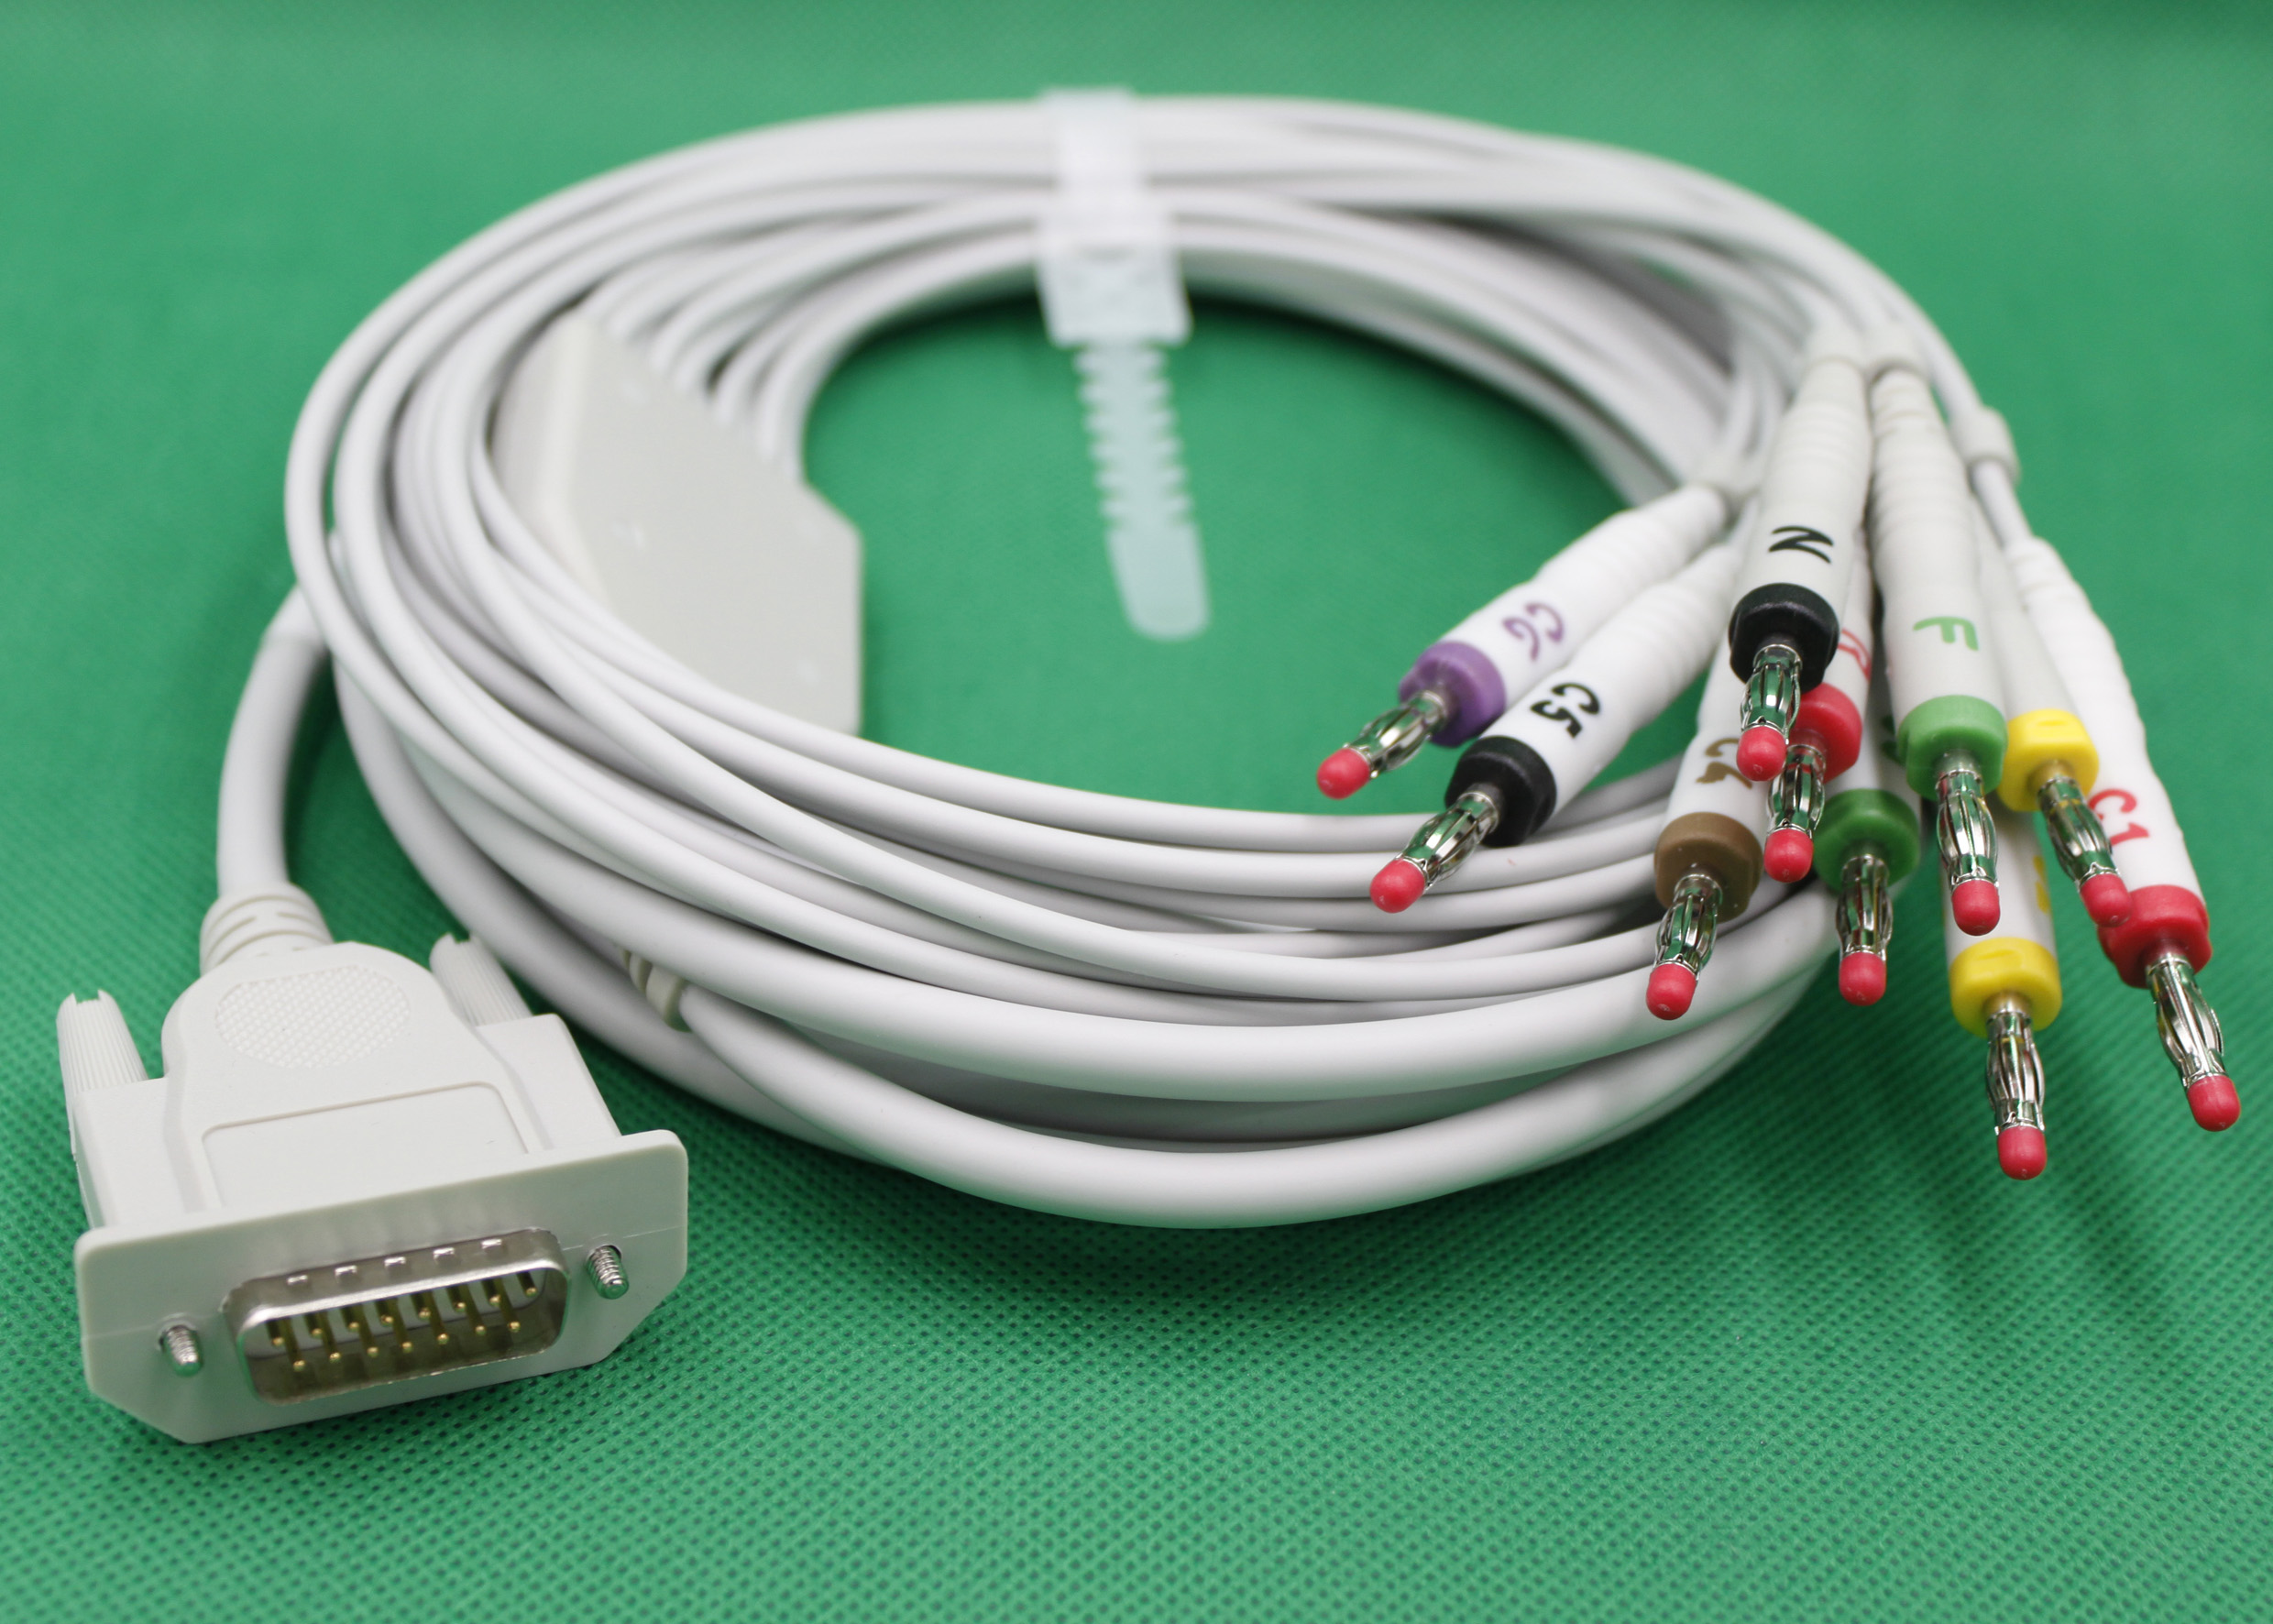 ЭКГ кабель пациента для Альтоника ЭКЗ/6Т-01, Альтон ЭК12-Т, Альтон-03, Альтон-06, Альтон-103, ЭК12ТМ, Альтон-106 (все модели 